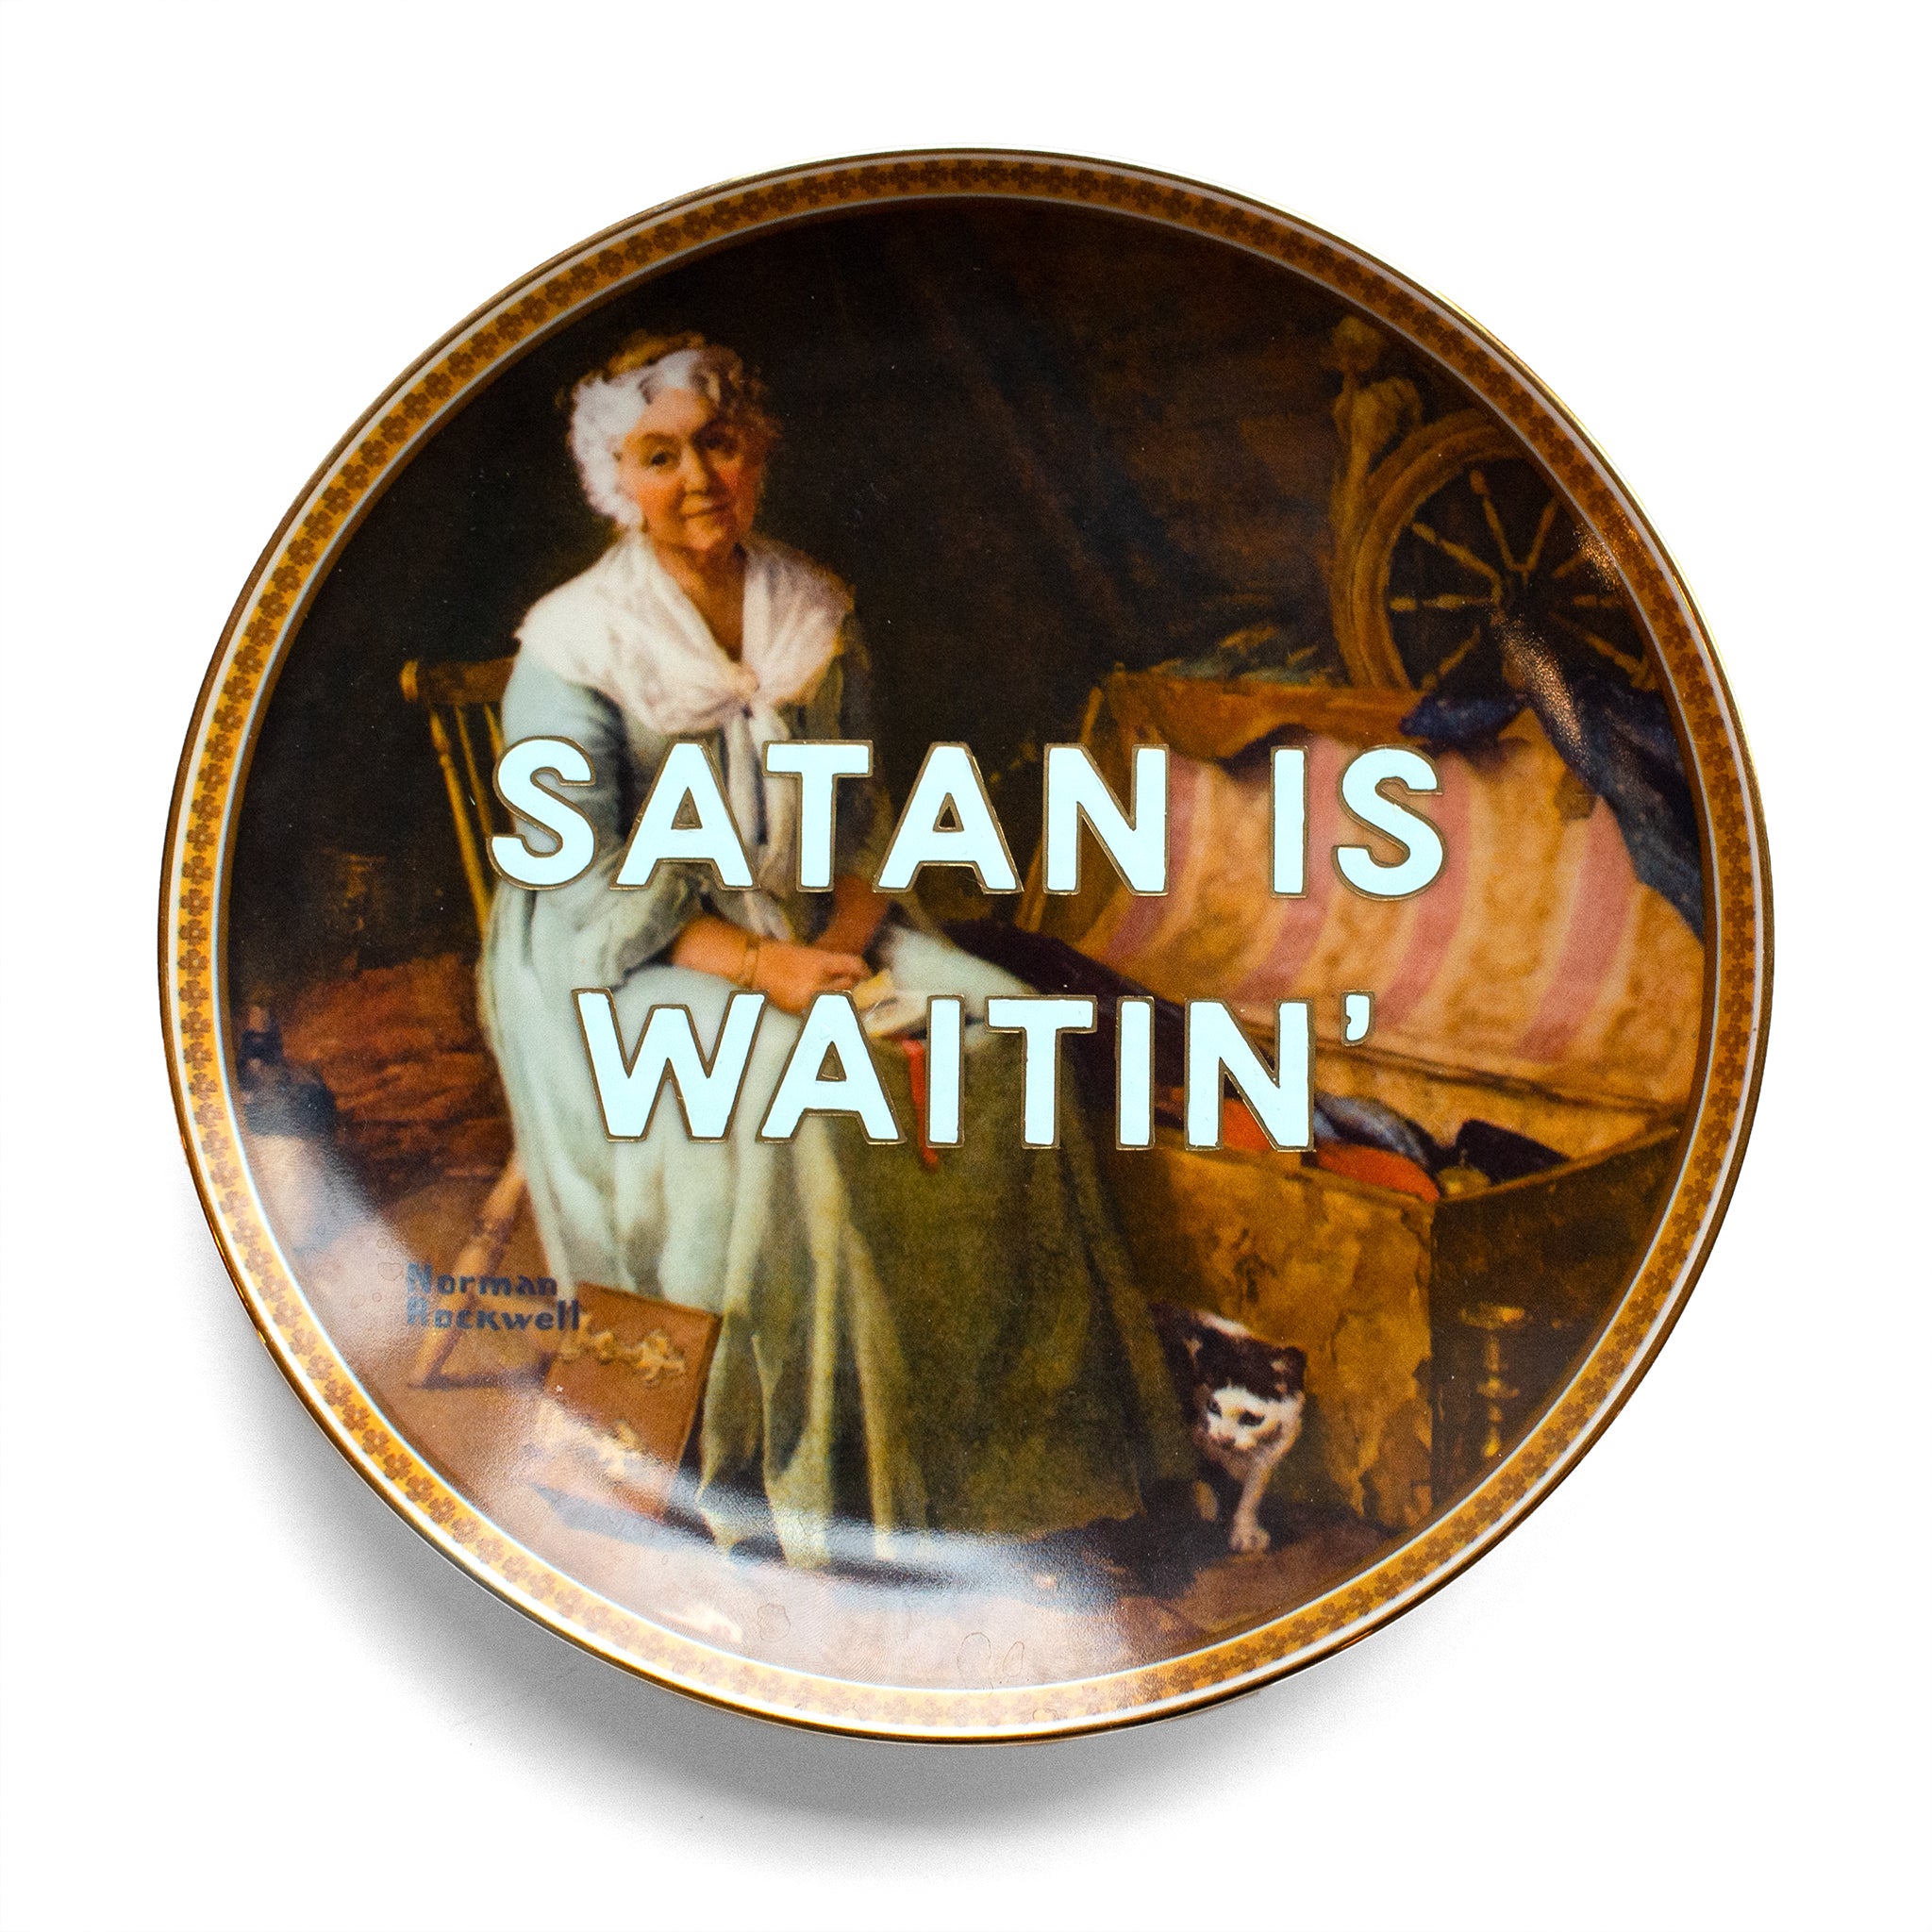 Satan is Waitin'